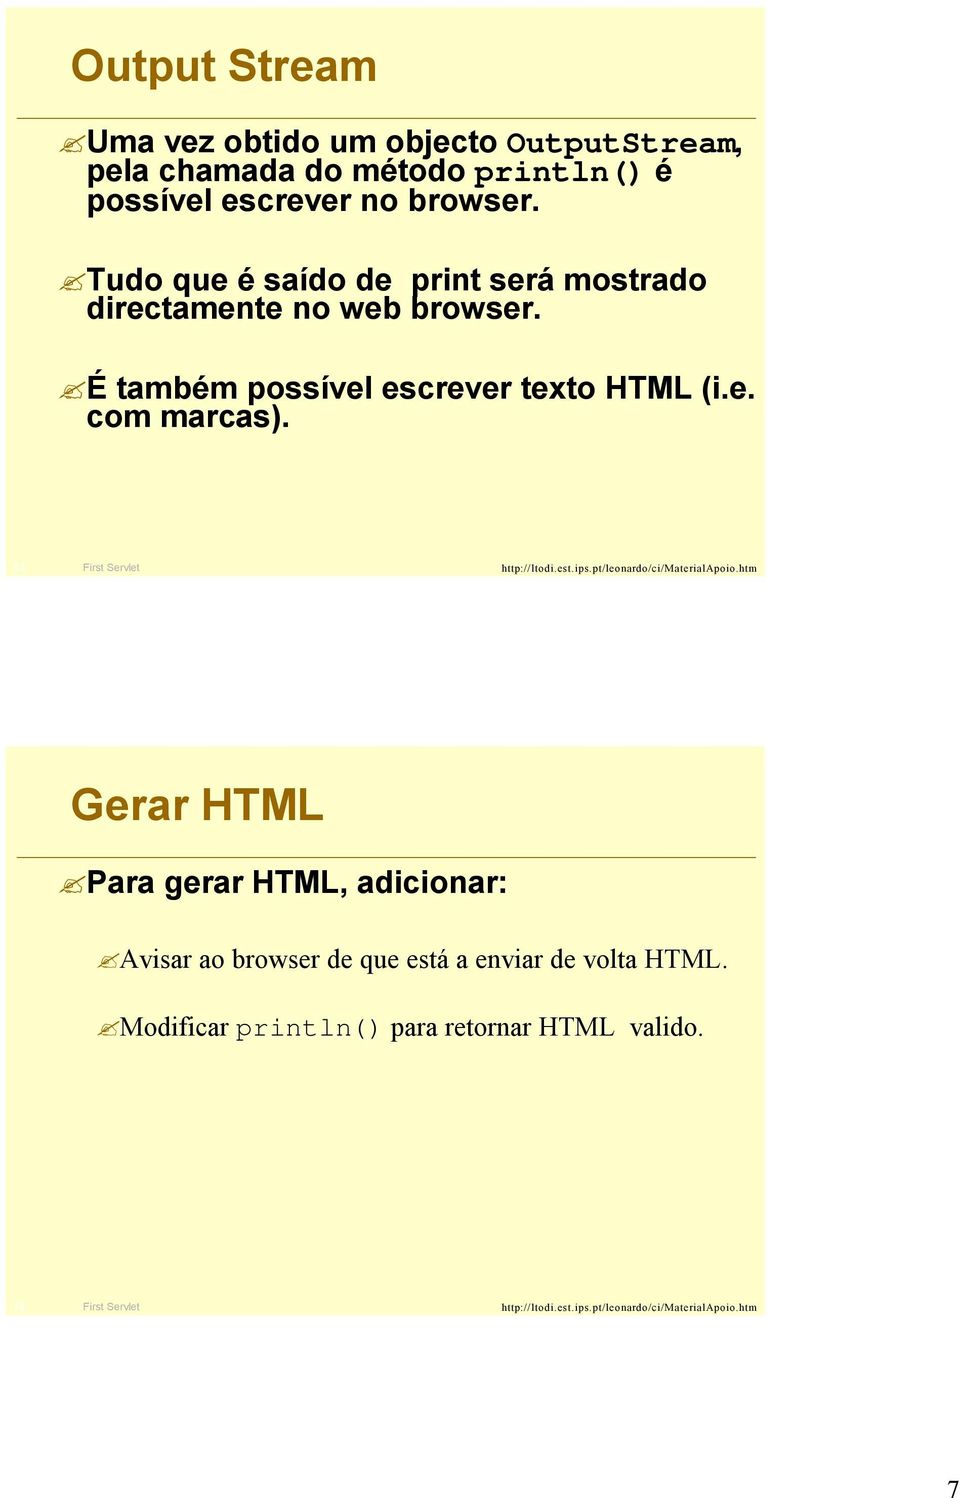 É também possível escrever texto HTML (i.e. com marcas).